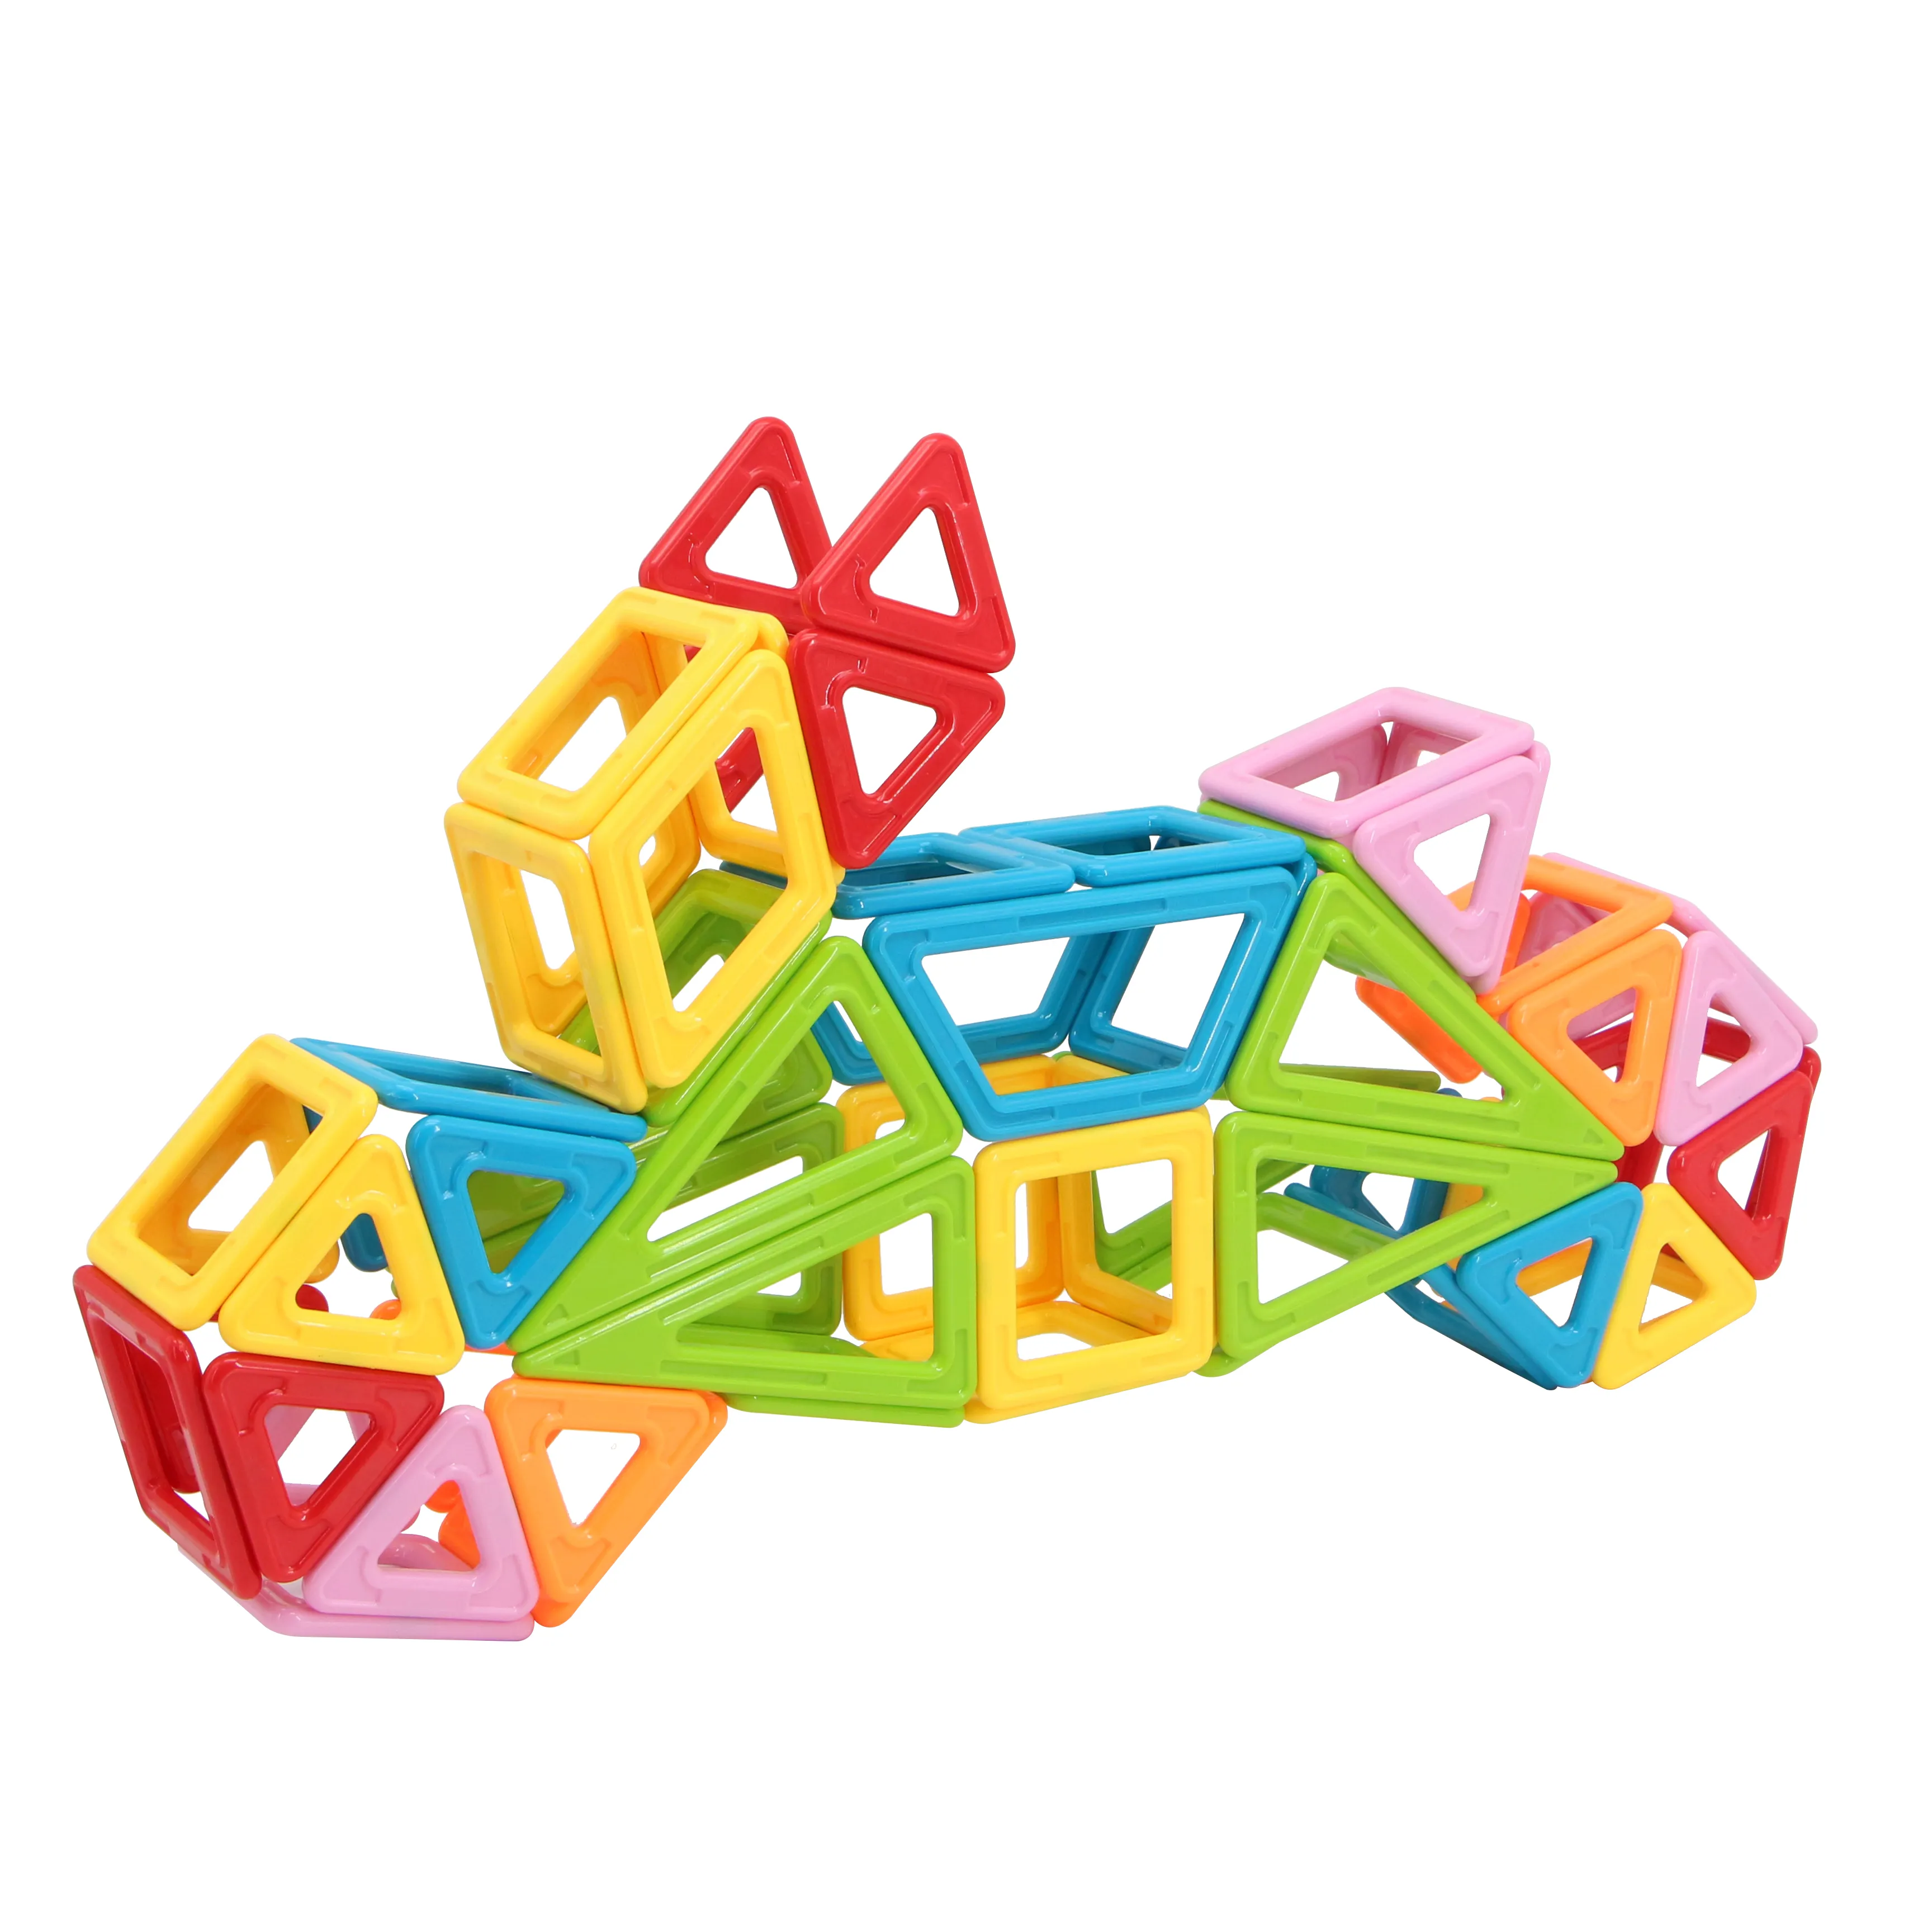 MNTL Wholesale Children's Toys Educational 3D Building Montessori 100 Pieces For Child Education